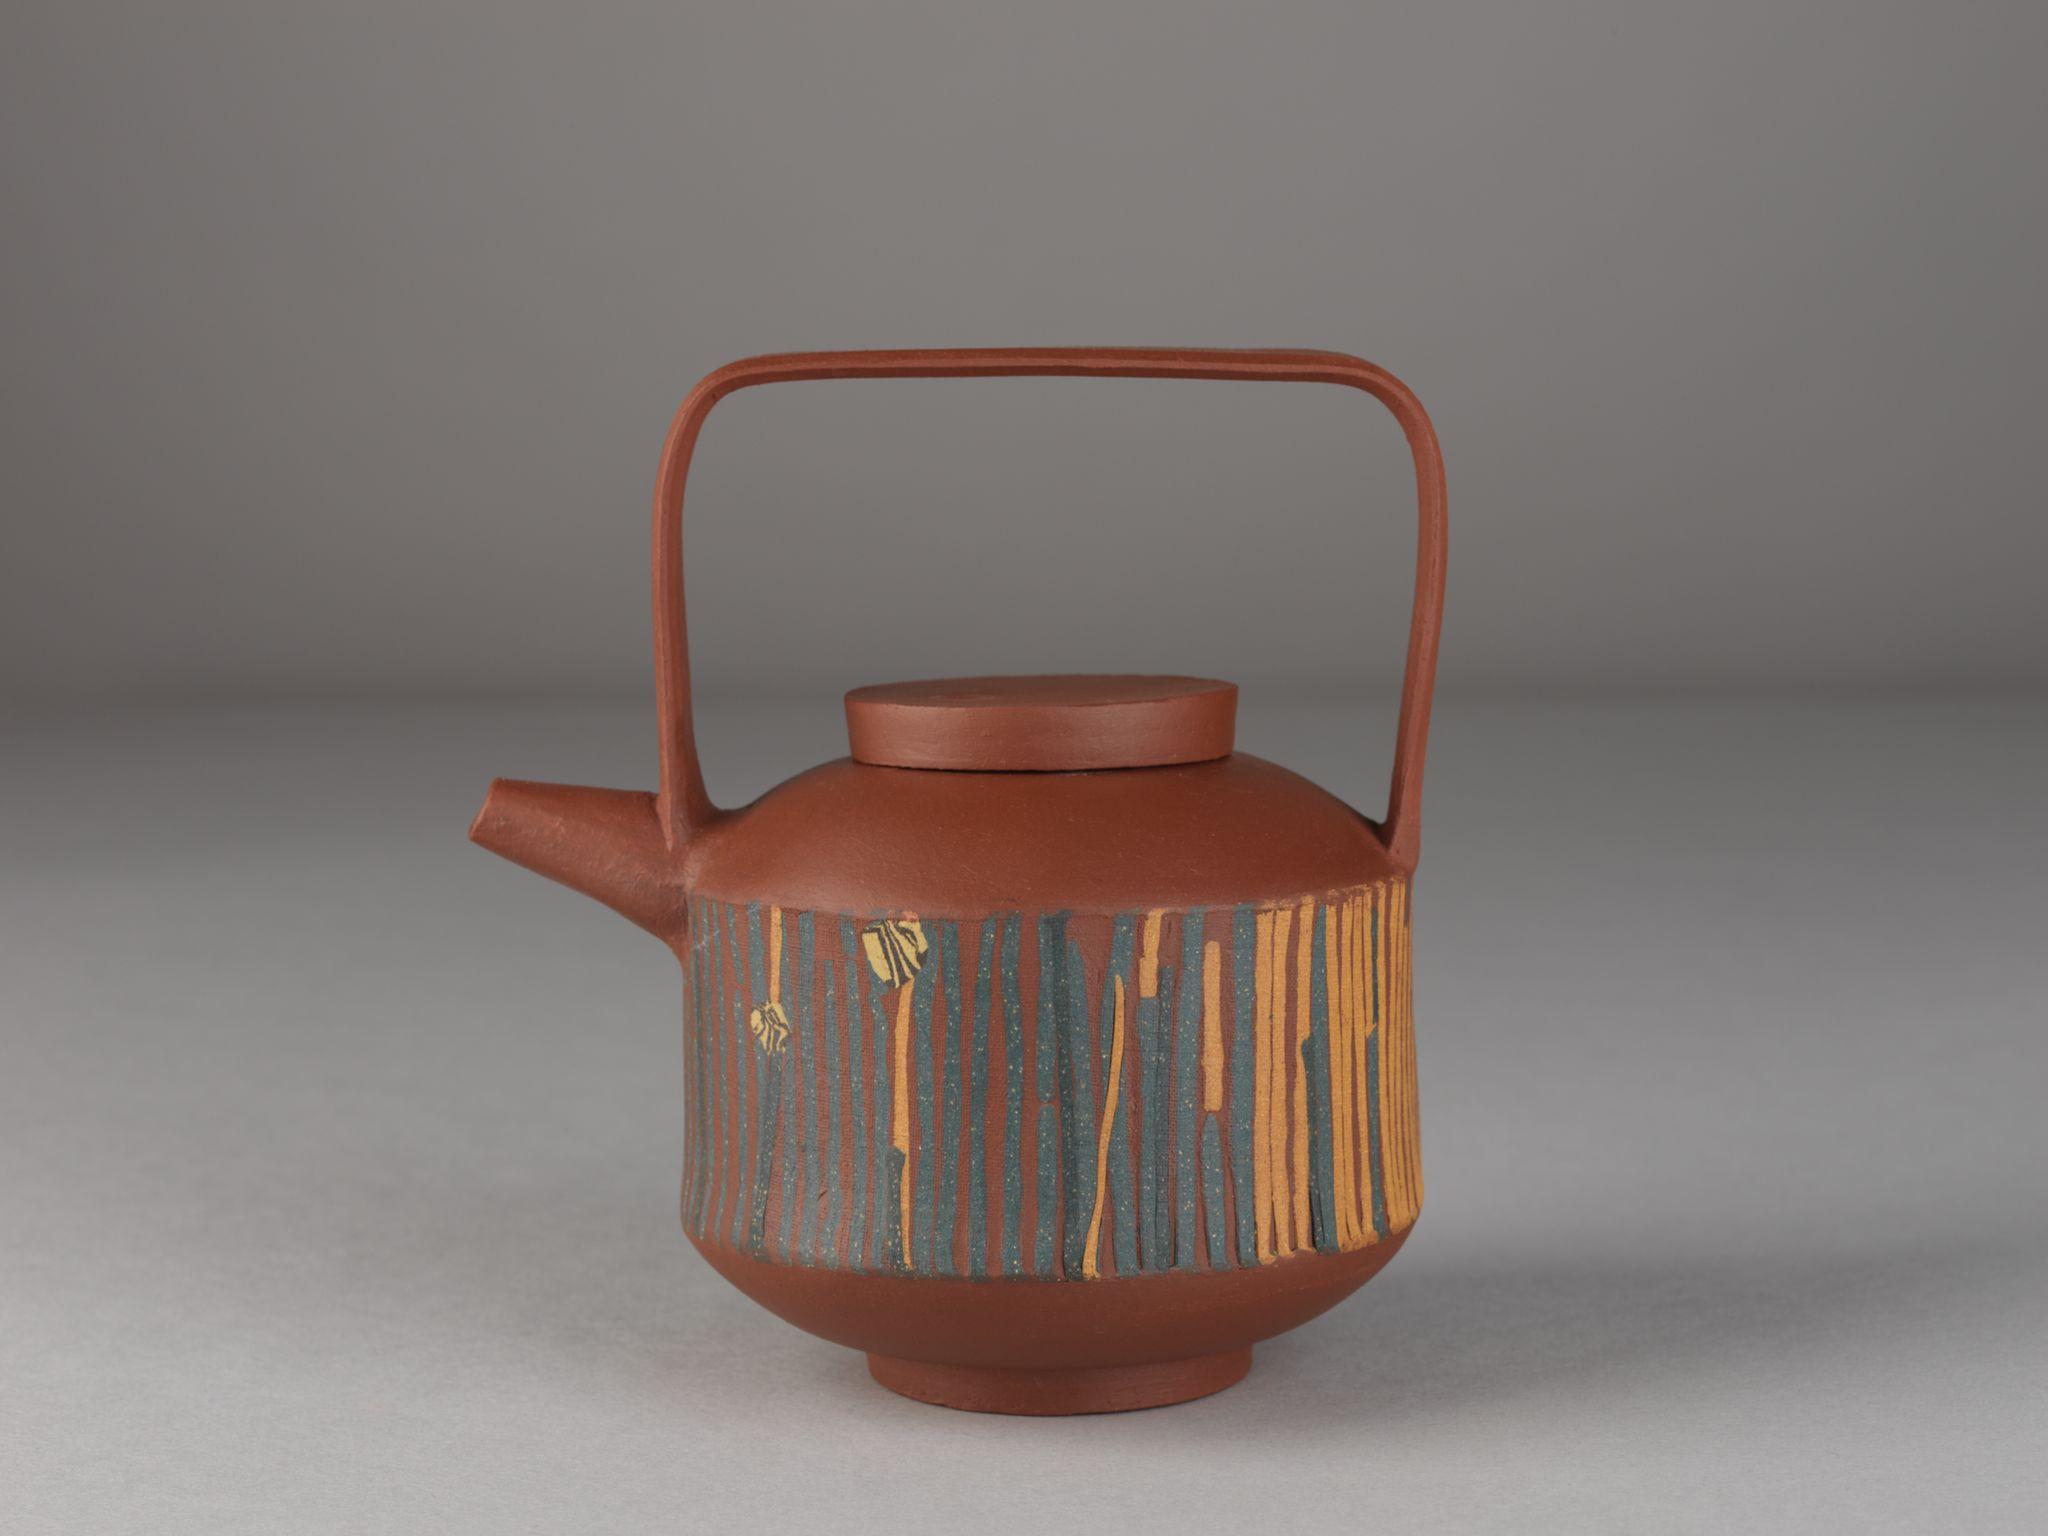 茶具文物馆现正举行「陶瓷茶具创作展览2021」。图示公开组亚军得主阮斯盈的作品《彩砂》。